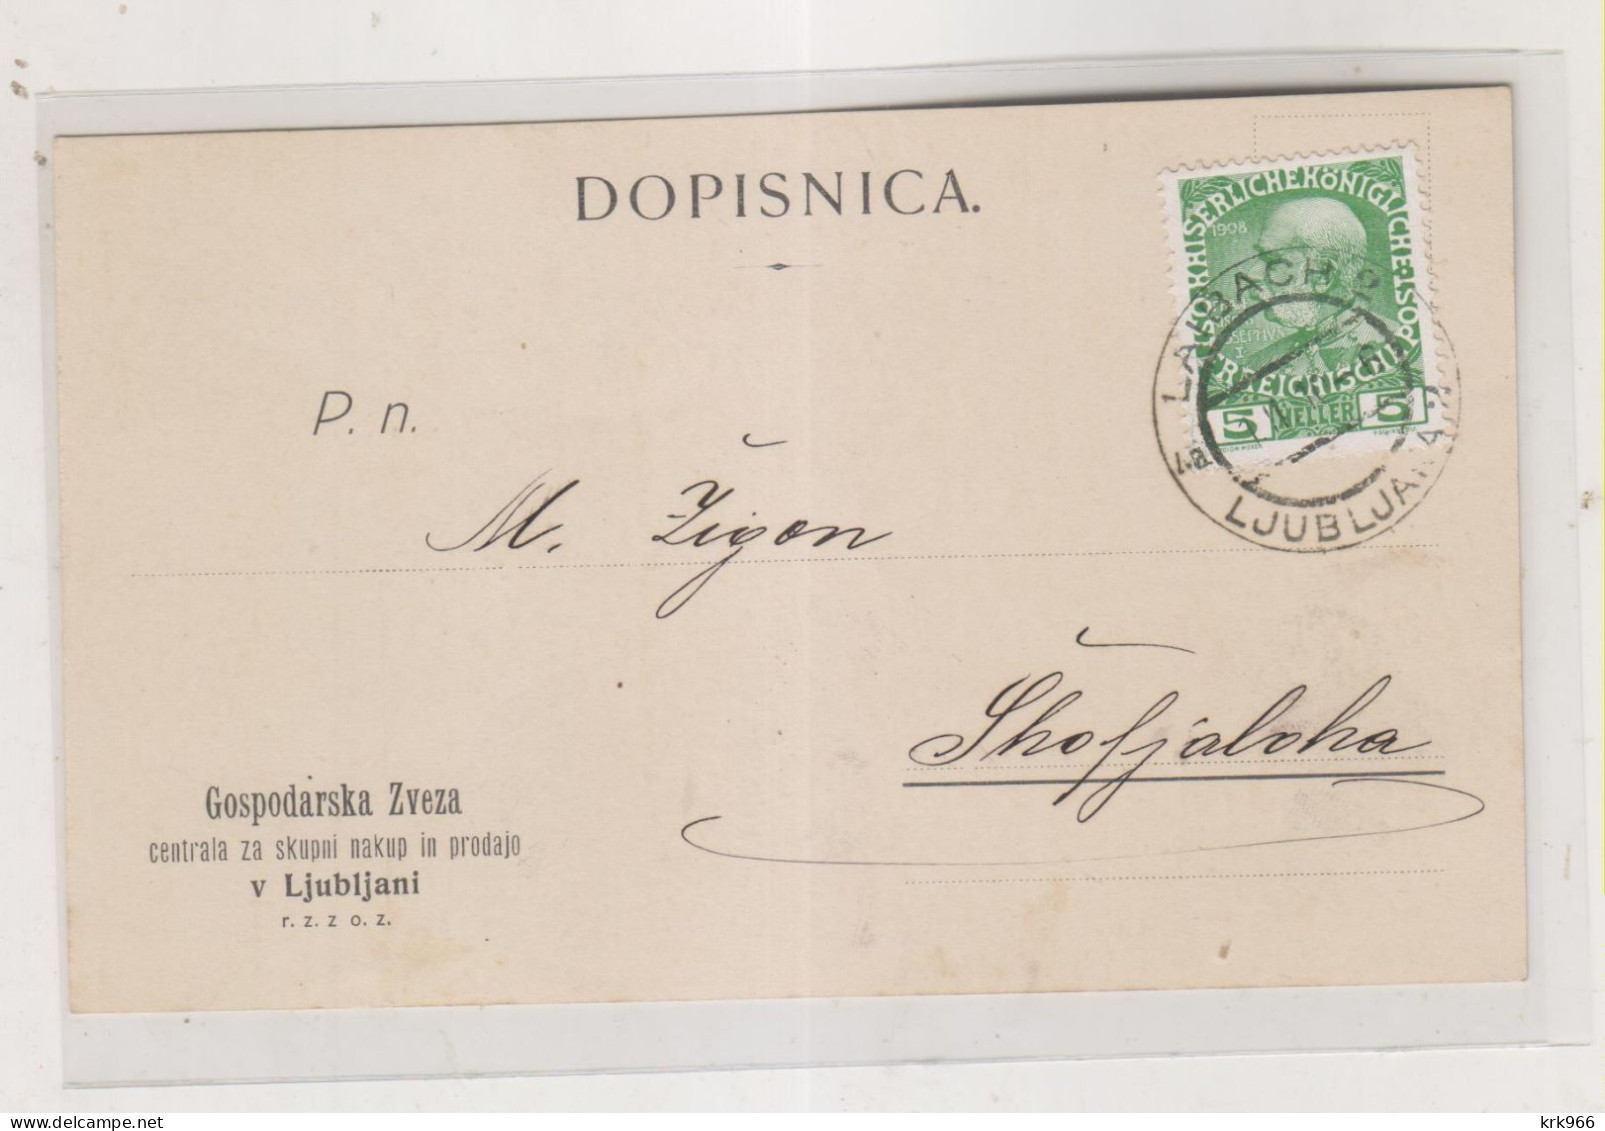 SLOVENIA,Austria 1910 LJUBLJANA LAIBACH Nice Postcard - Slovenia